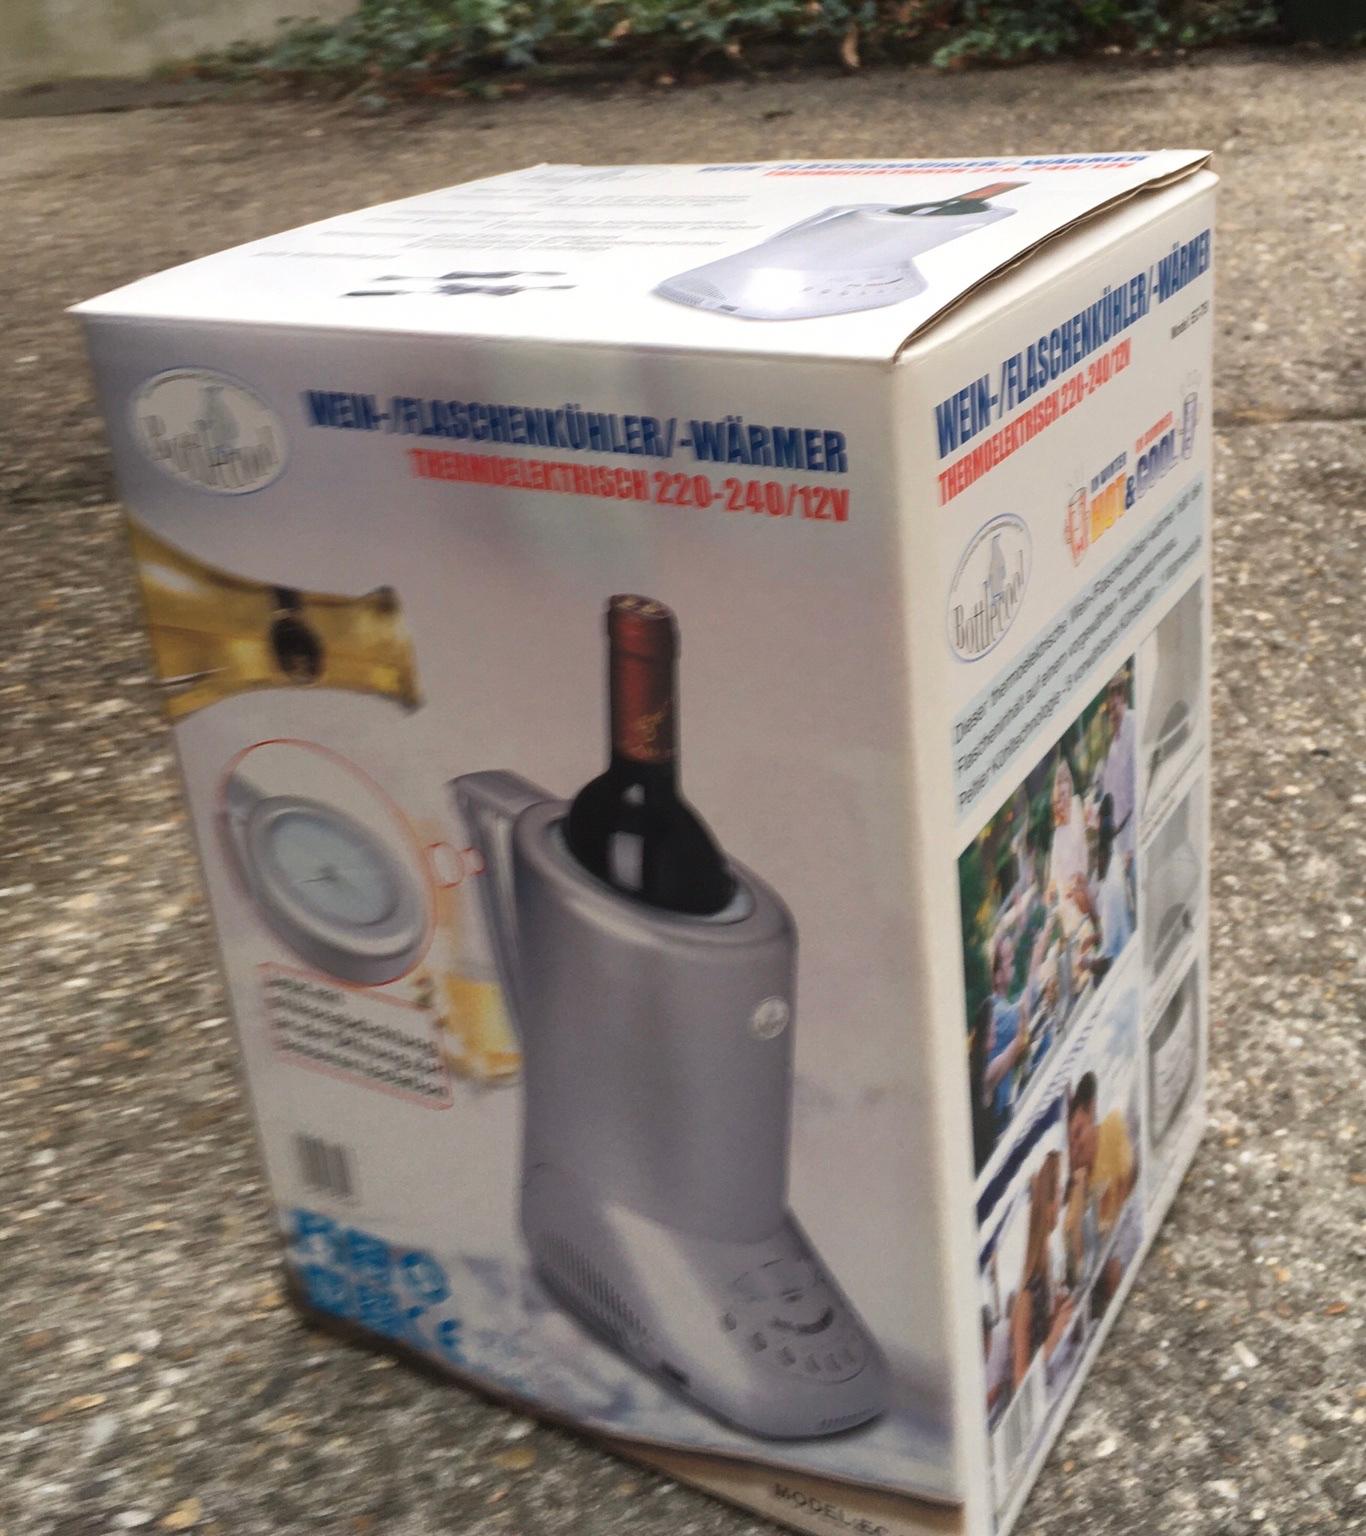 Wein-/Flaschenkühler/Flaschenwärmer in 1030 KG Landstraße für € 4,00 zum  Verkauf